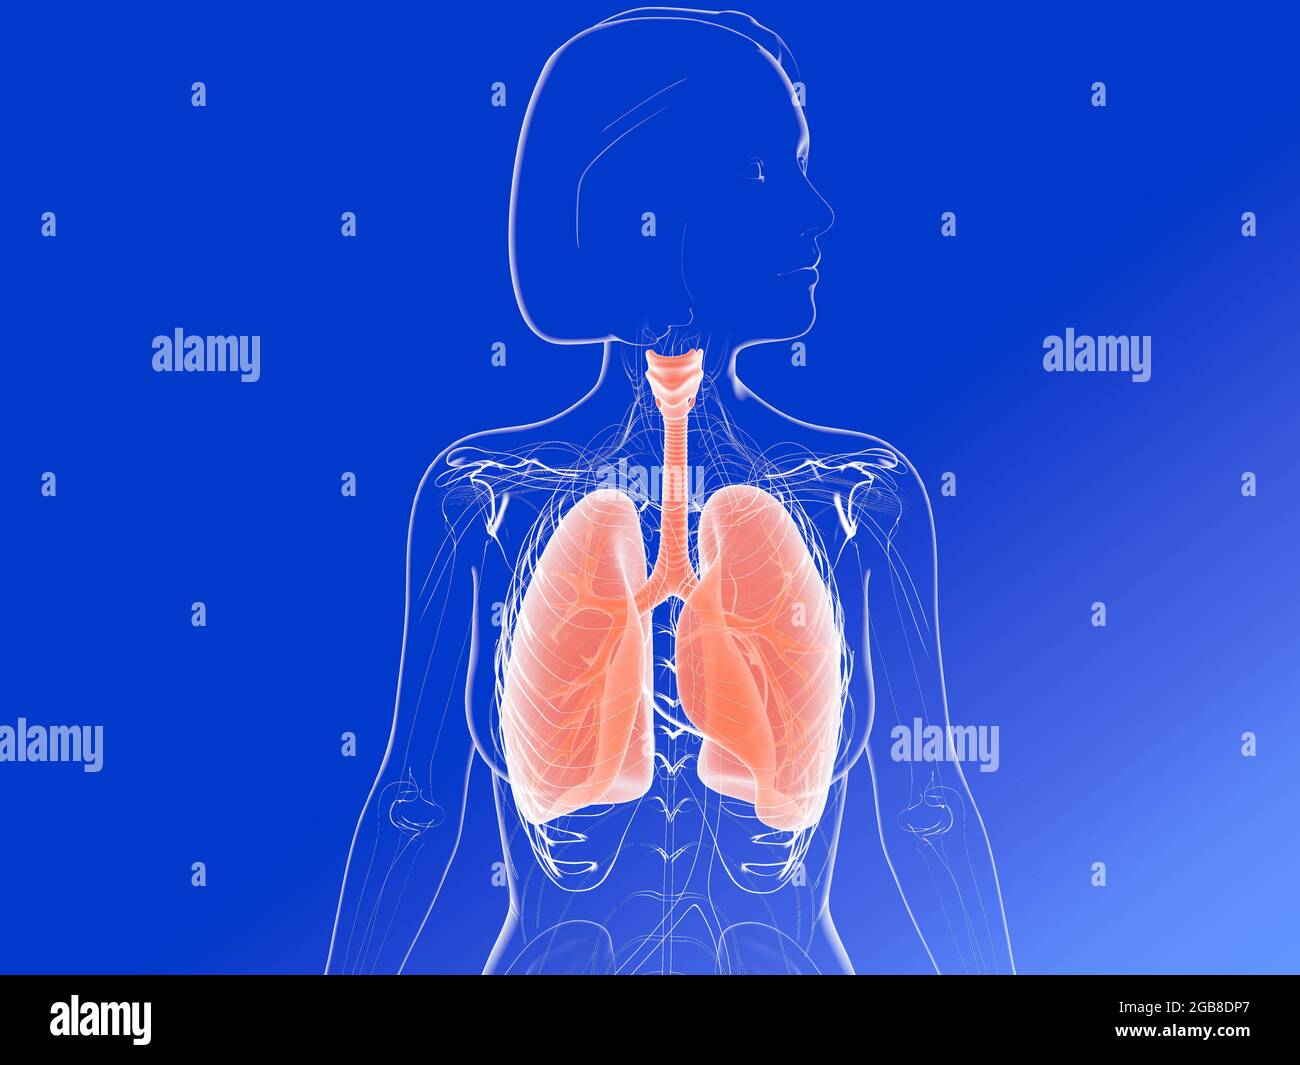 illustration 3d de l'anatomie des poumons et des bronches mettant en évidence les organes internes. Image de la femme transparente. Banque D'Images